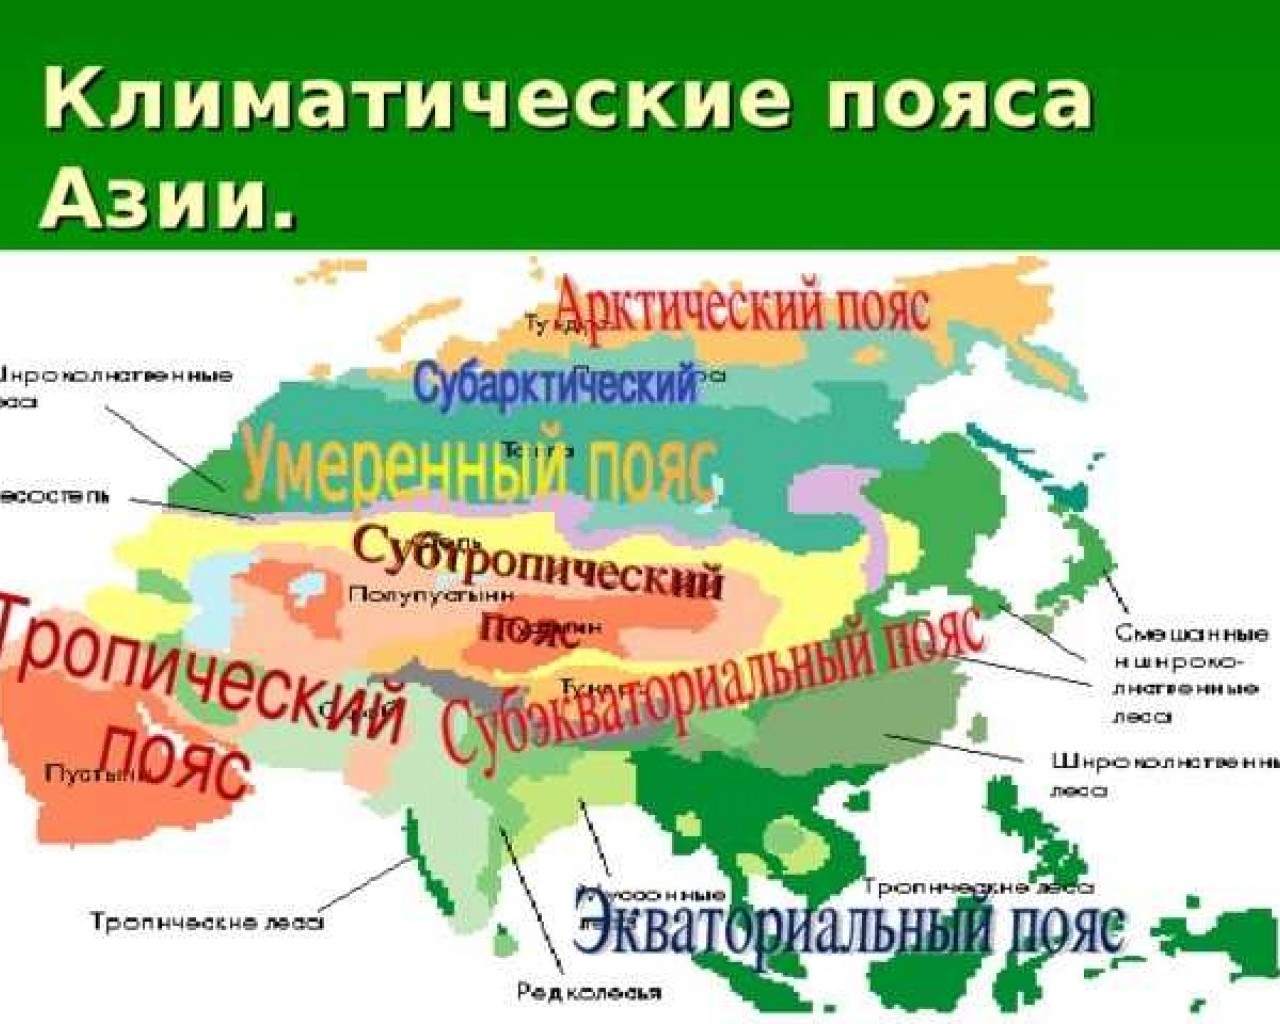 Географические зоны евразии. Центральная Азия карта климатические пояса. Карта климат поясов Евразии. Климатические пояса Юго Восточной Азии. Карта климатических поясов Евразии.